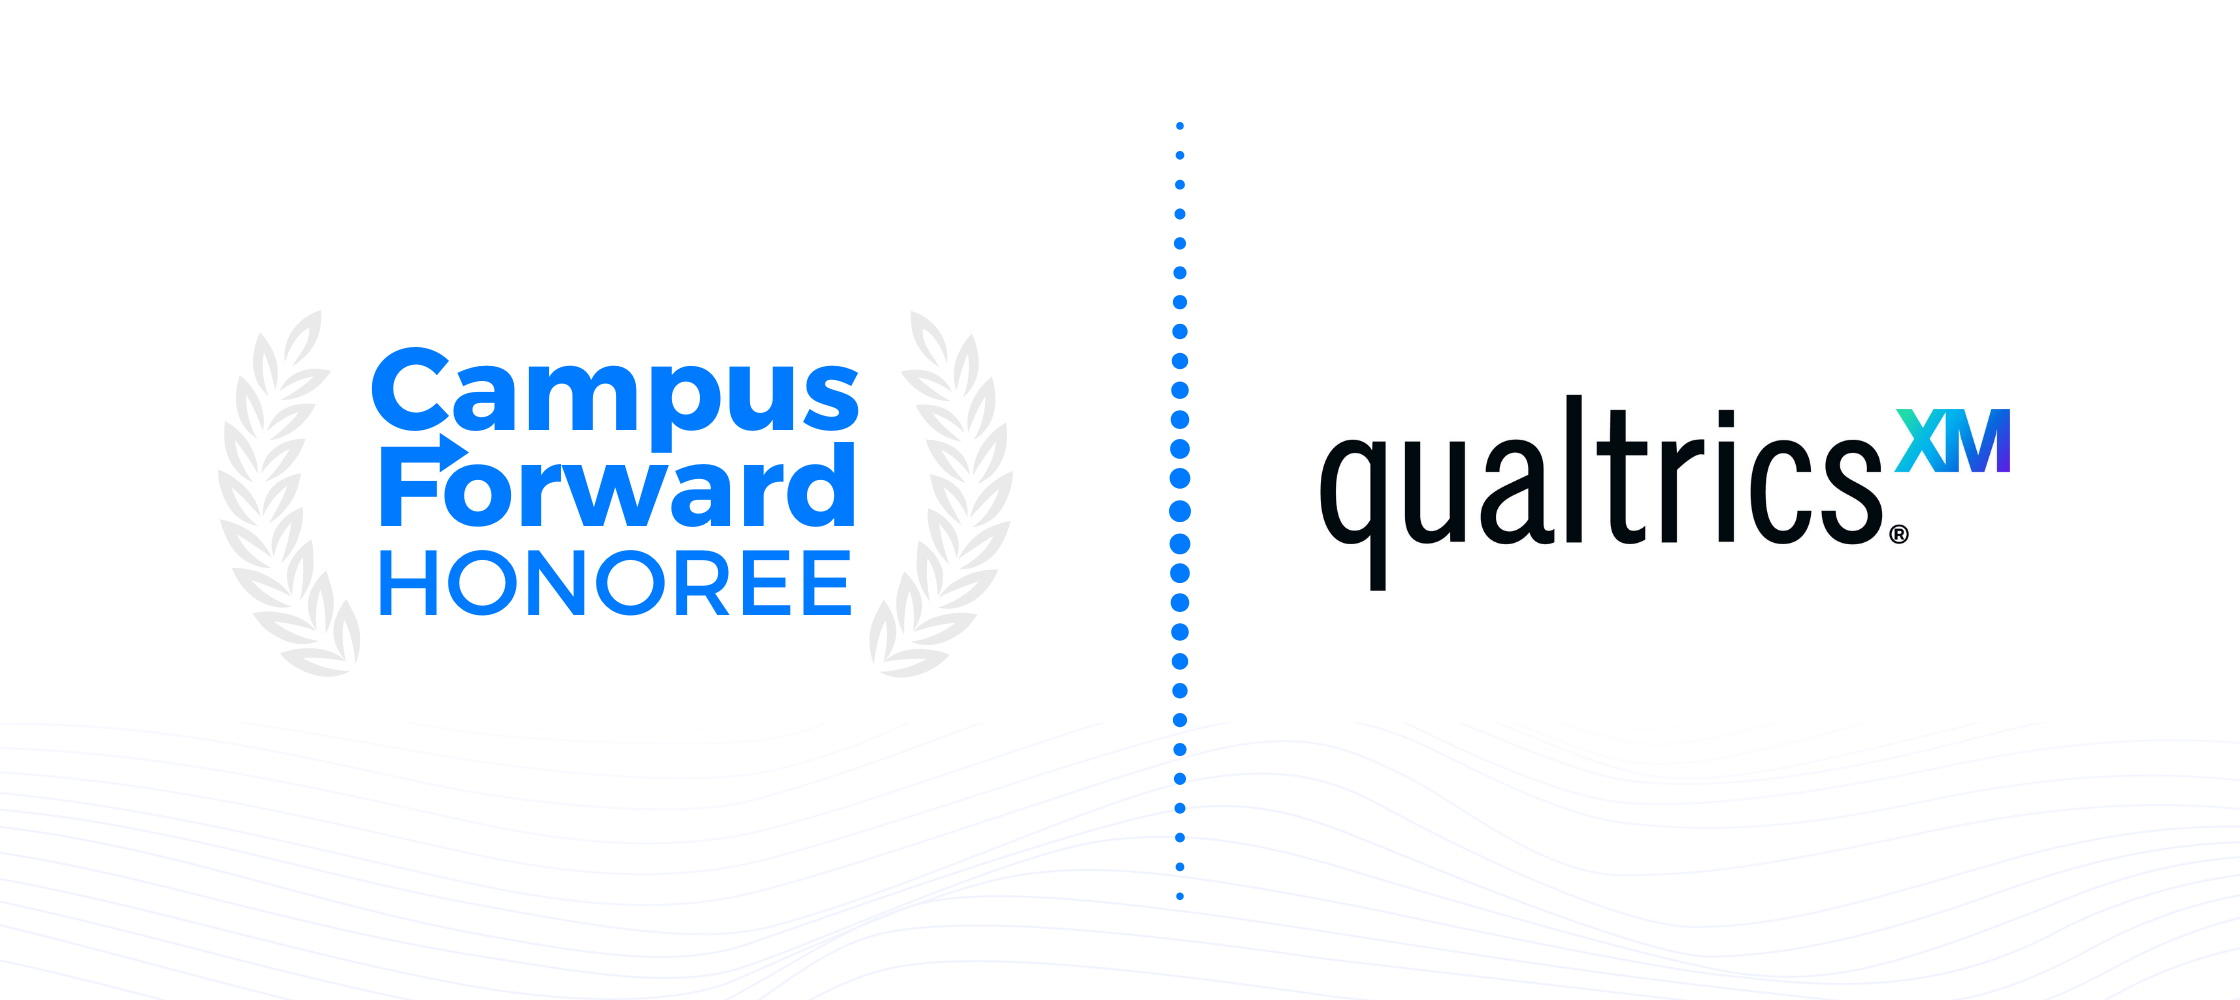 Campus Forward Honoree - Qualtrics